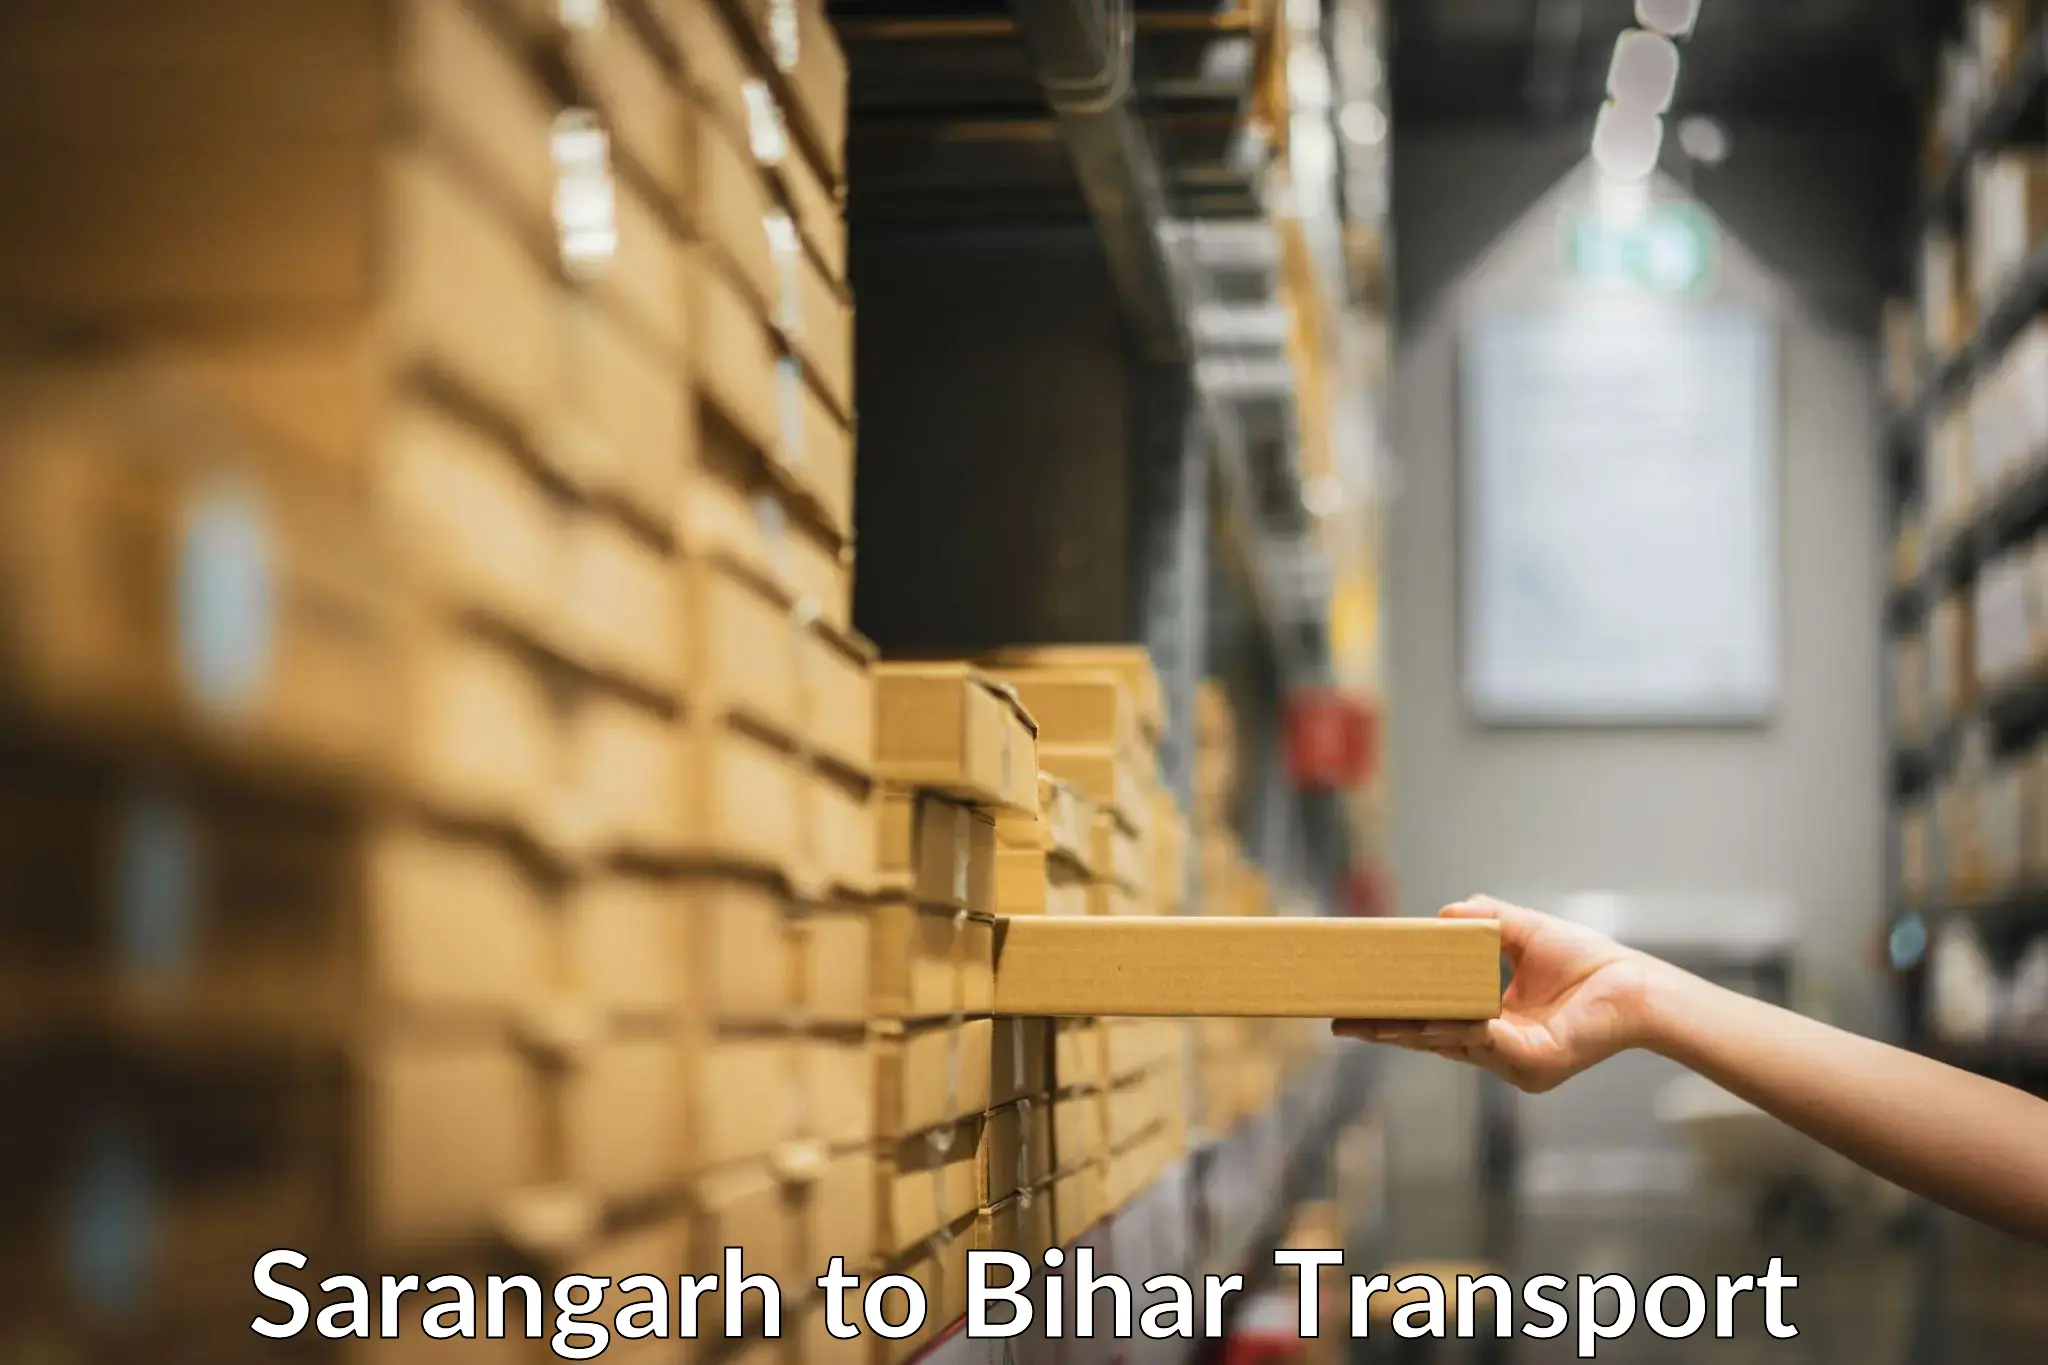 Container transport service Sarangarh to Aurai